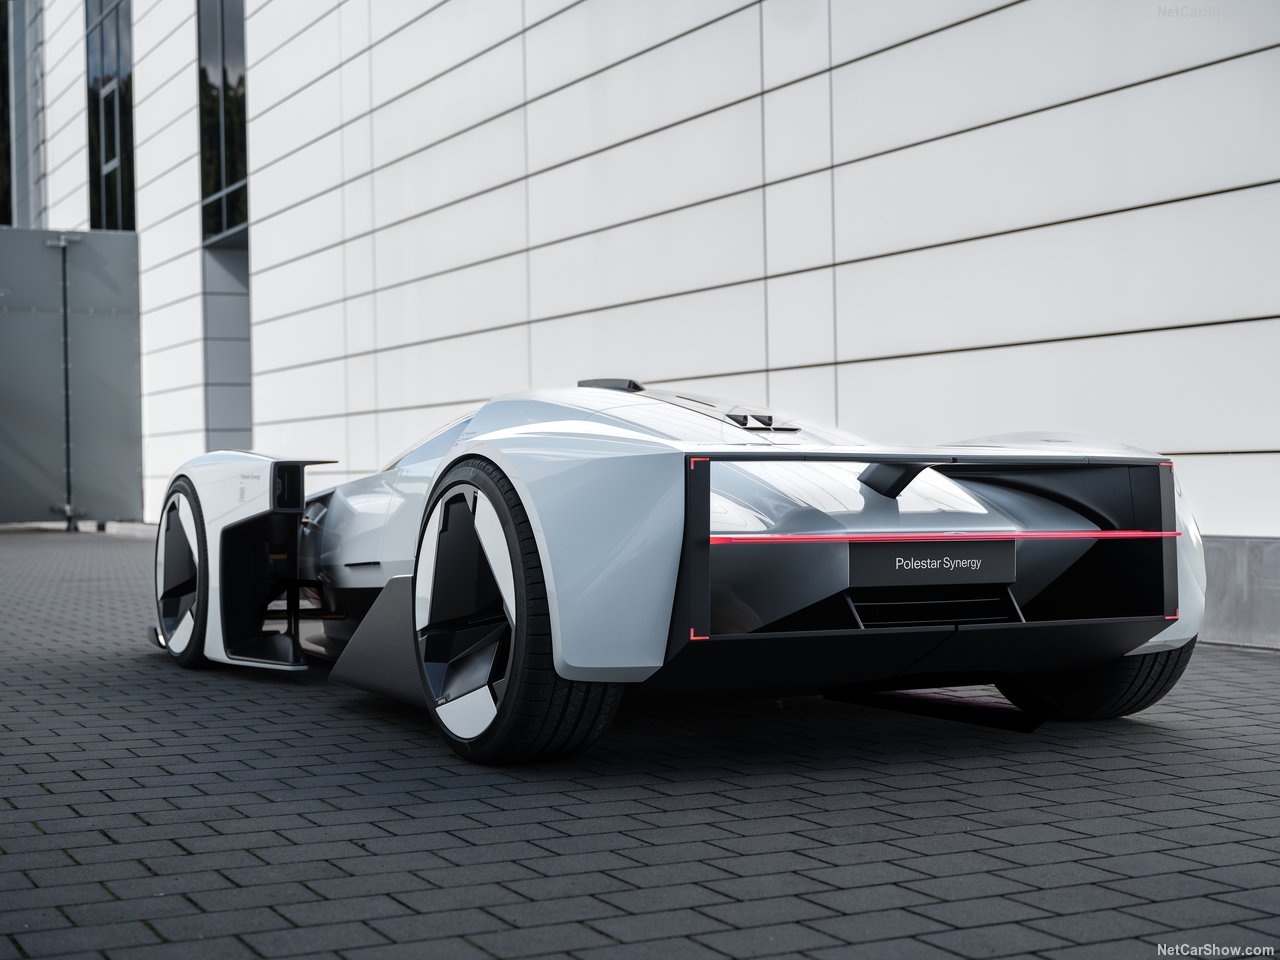 Когда компания Polestar представила свой концепт Synergy на автосалоне в Мюнхене в 2023 году, сразу же заговорили о том, что поразительный суперкар будет запущен в производство. Теперь руководитель отдела дизайна Polestar Максимилиан Миссони повторил